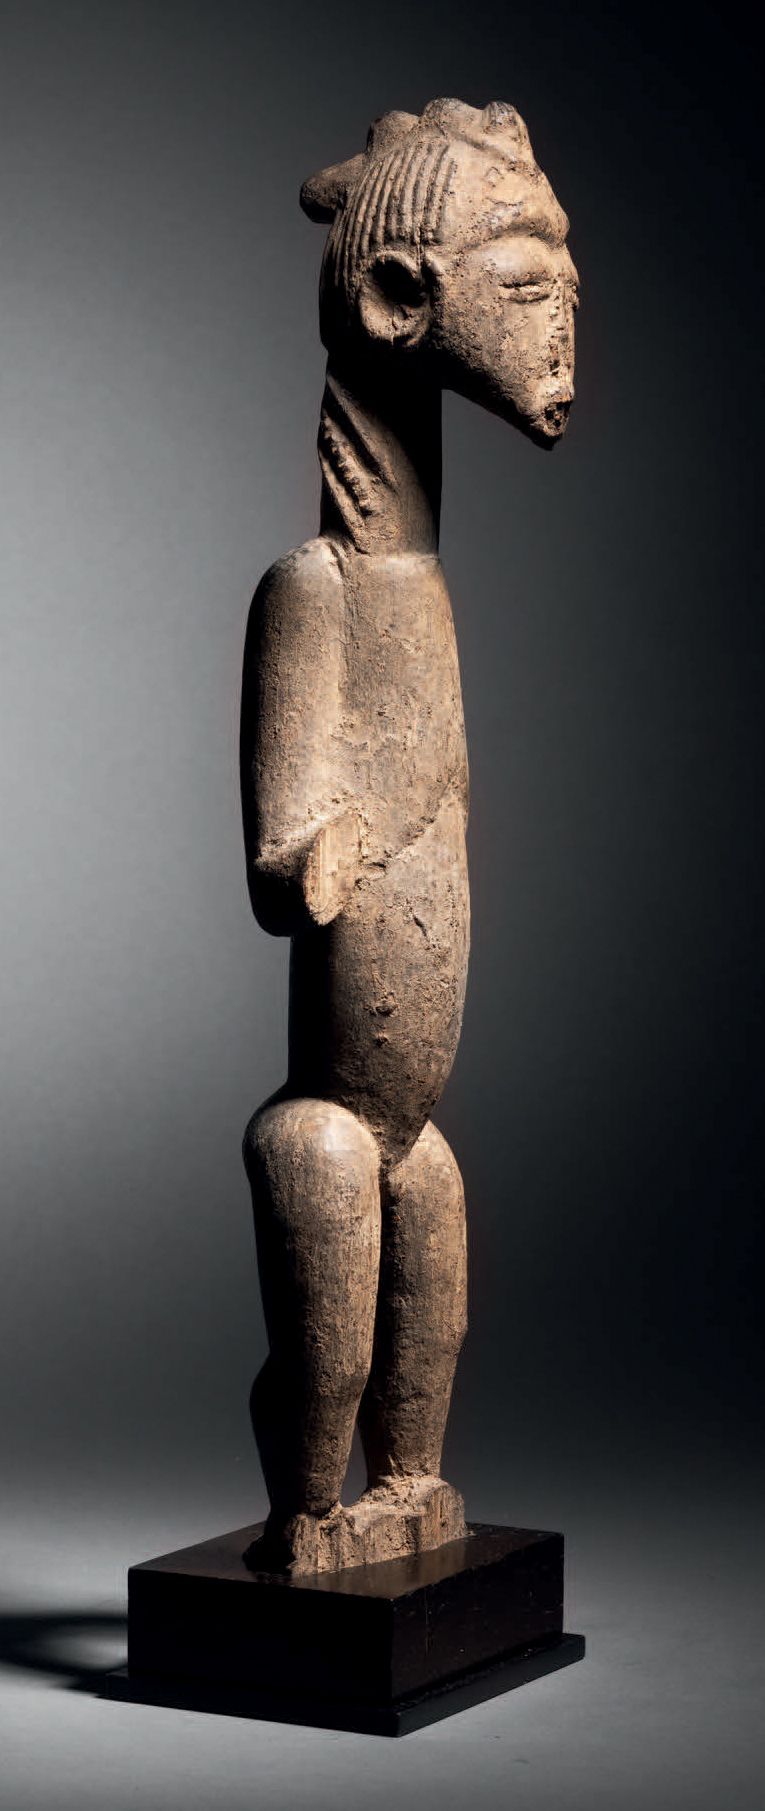 Null Estatua, Baule, Costa de Marfil
Madera con pátina gris crujiente
H. 41,5 cm&hellip;